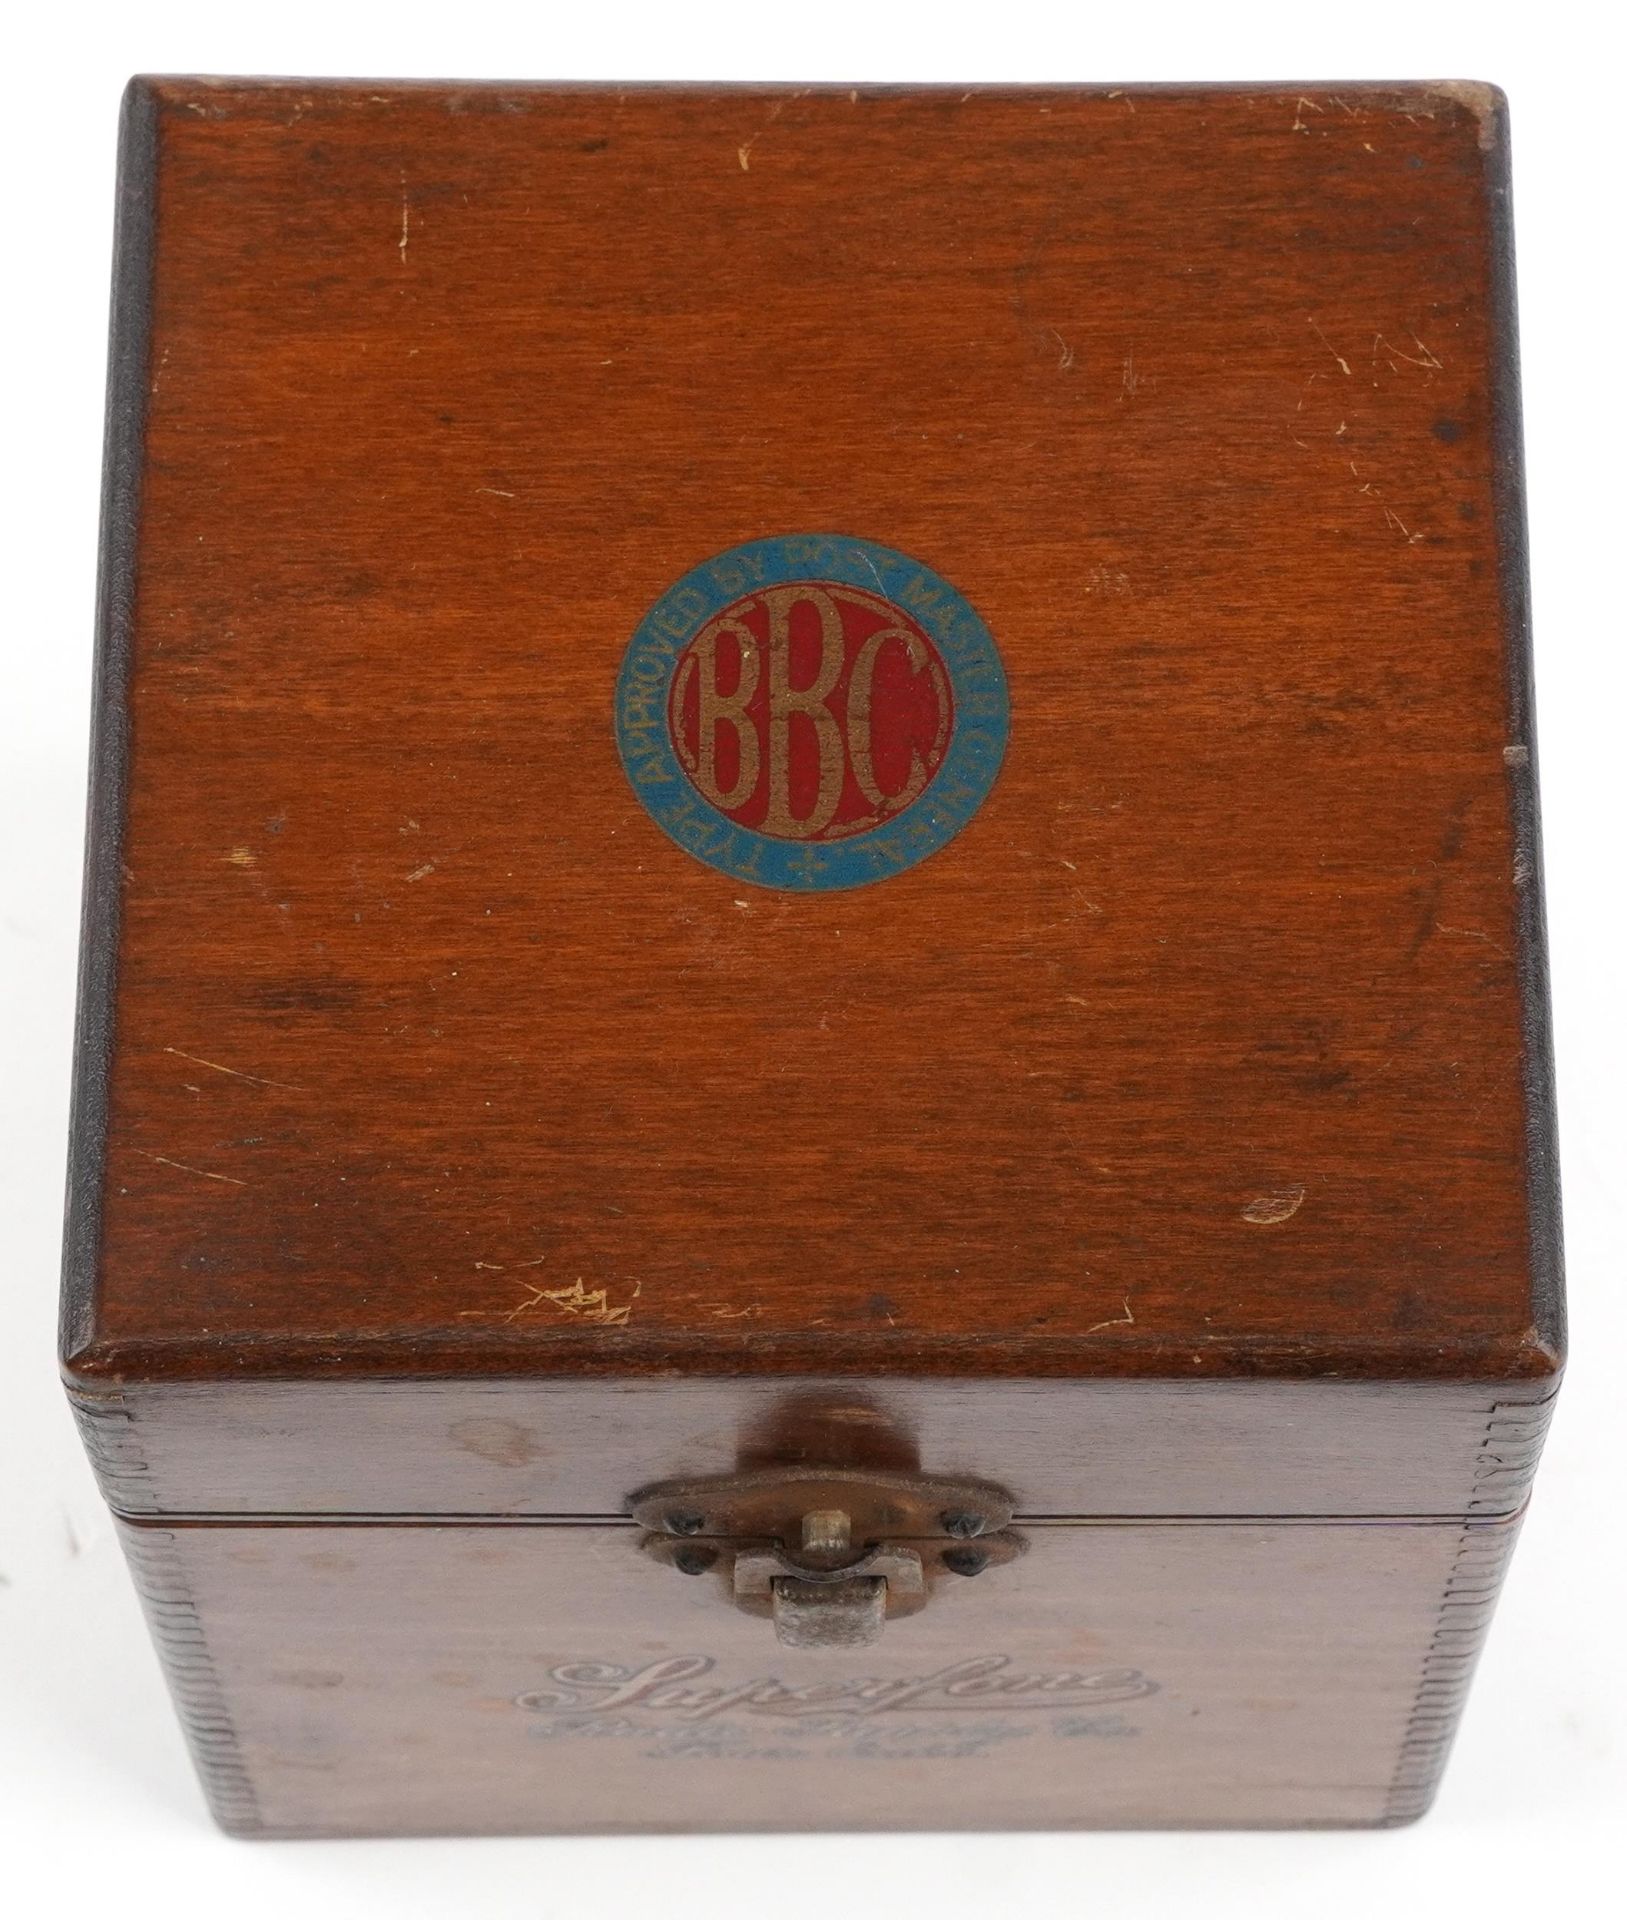 Vintage BBC voltmeter, 17cm high - Bild 4 aus 6